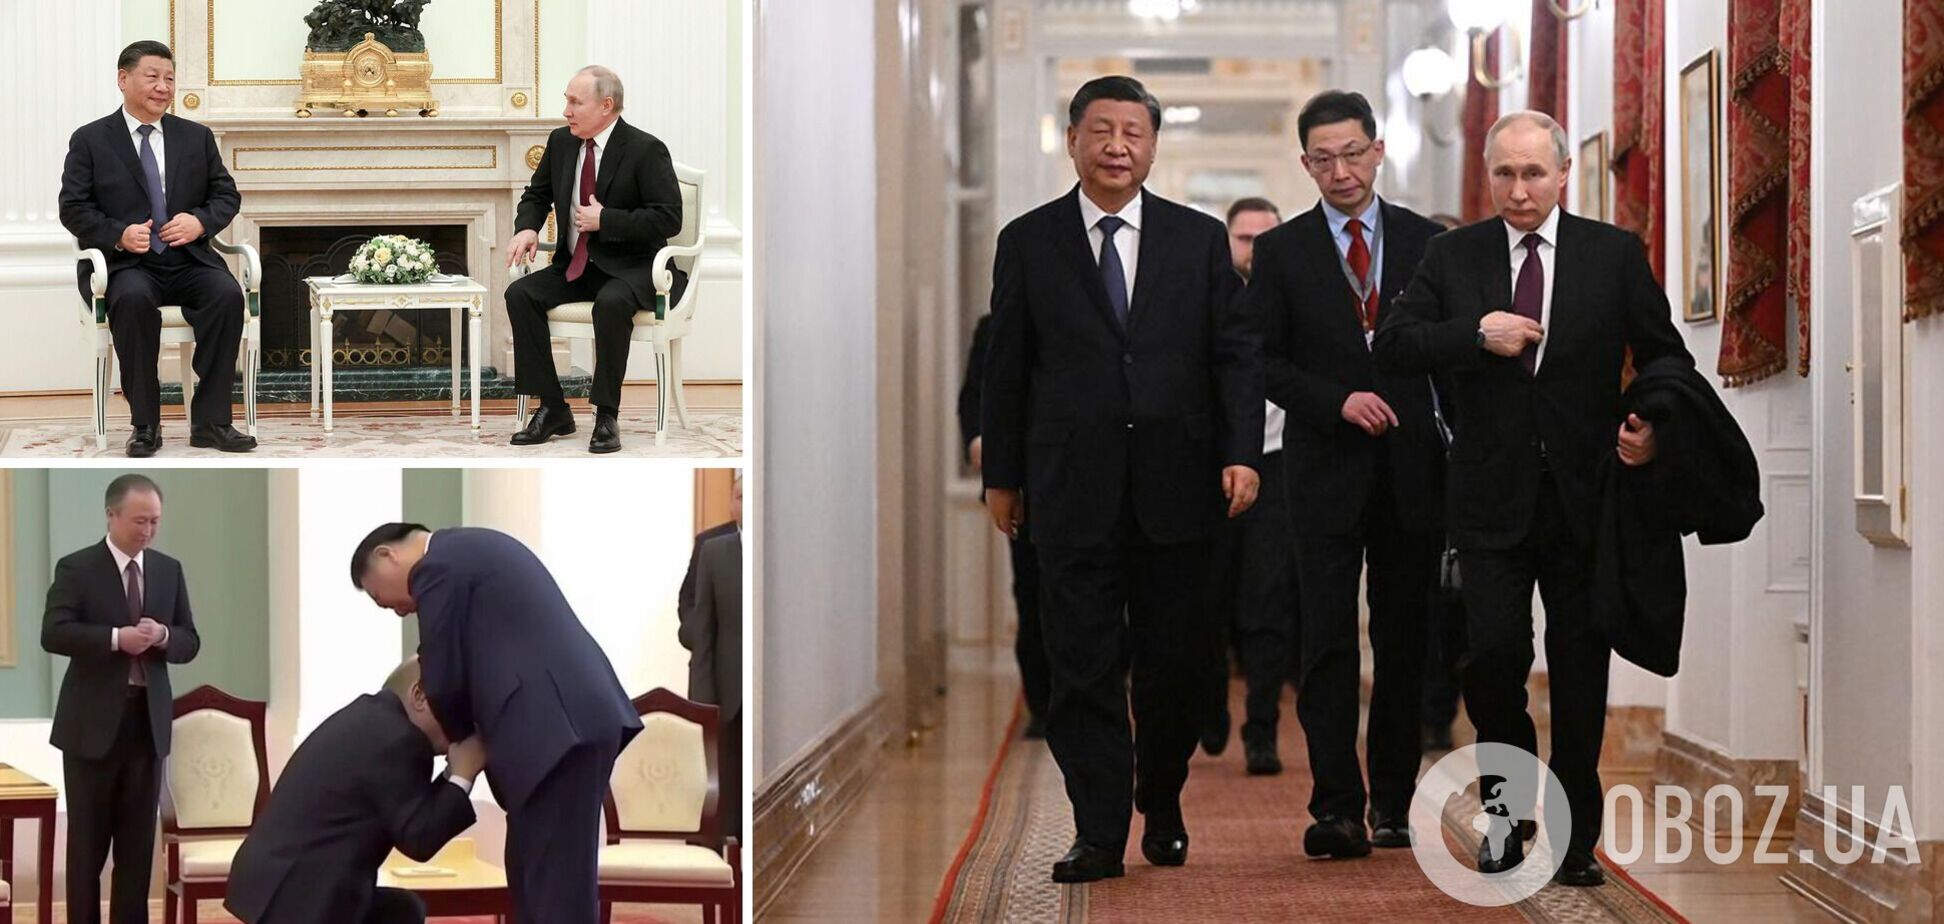 Очікування Путіна не виправдалися: в ISW вказали на важливий нюанс у риториці Сі Цзиньпіна й оцінили результат переговорів